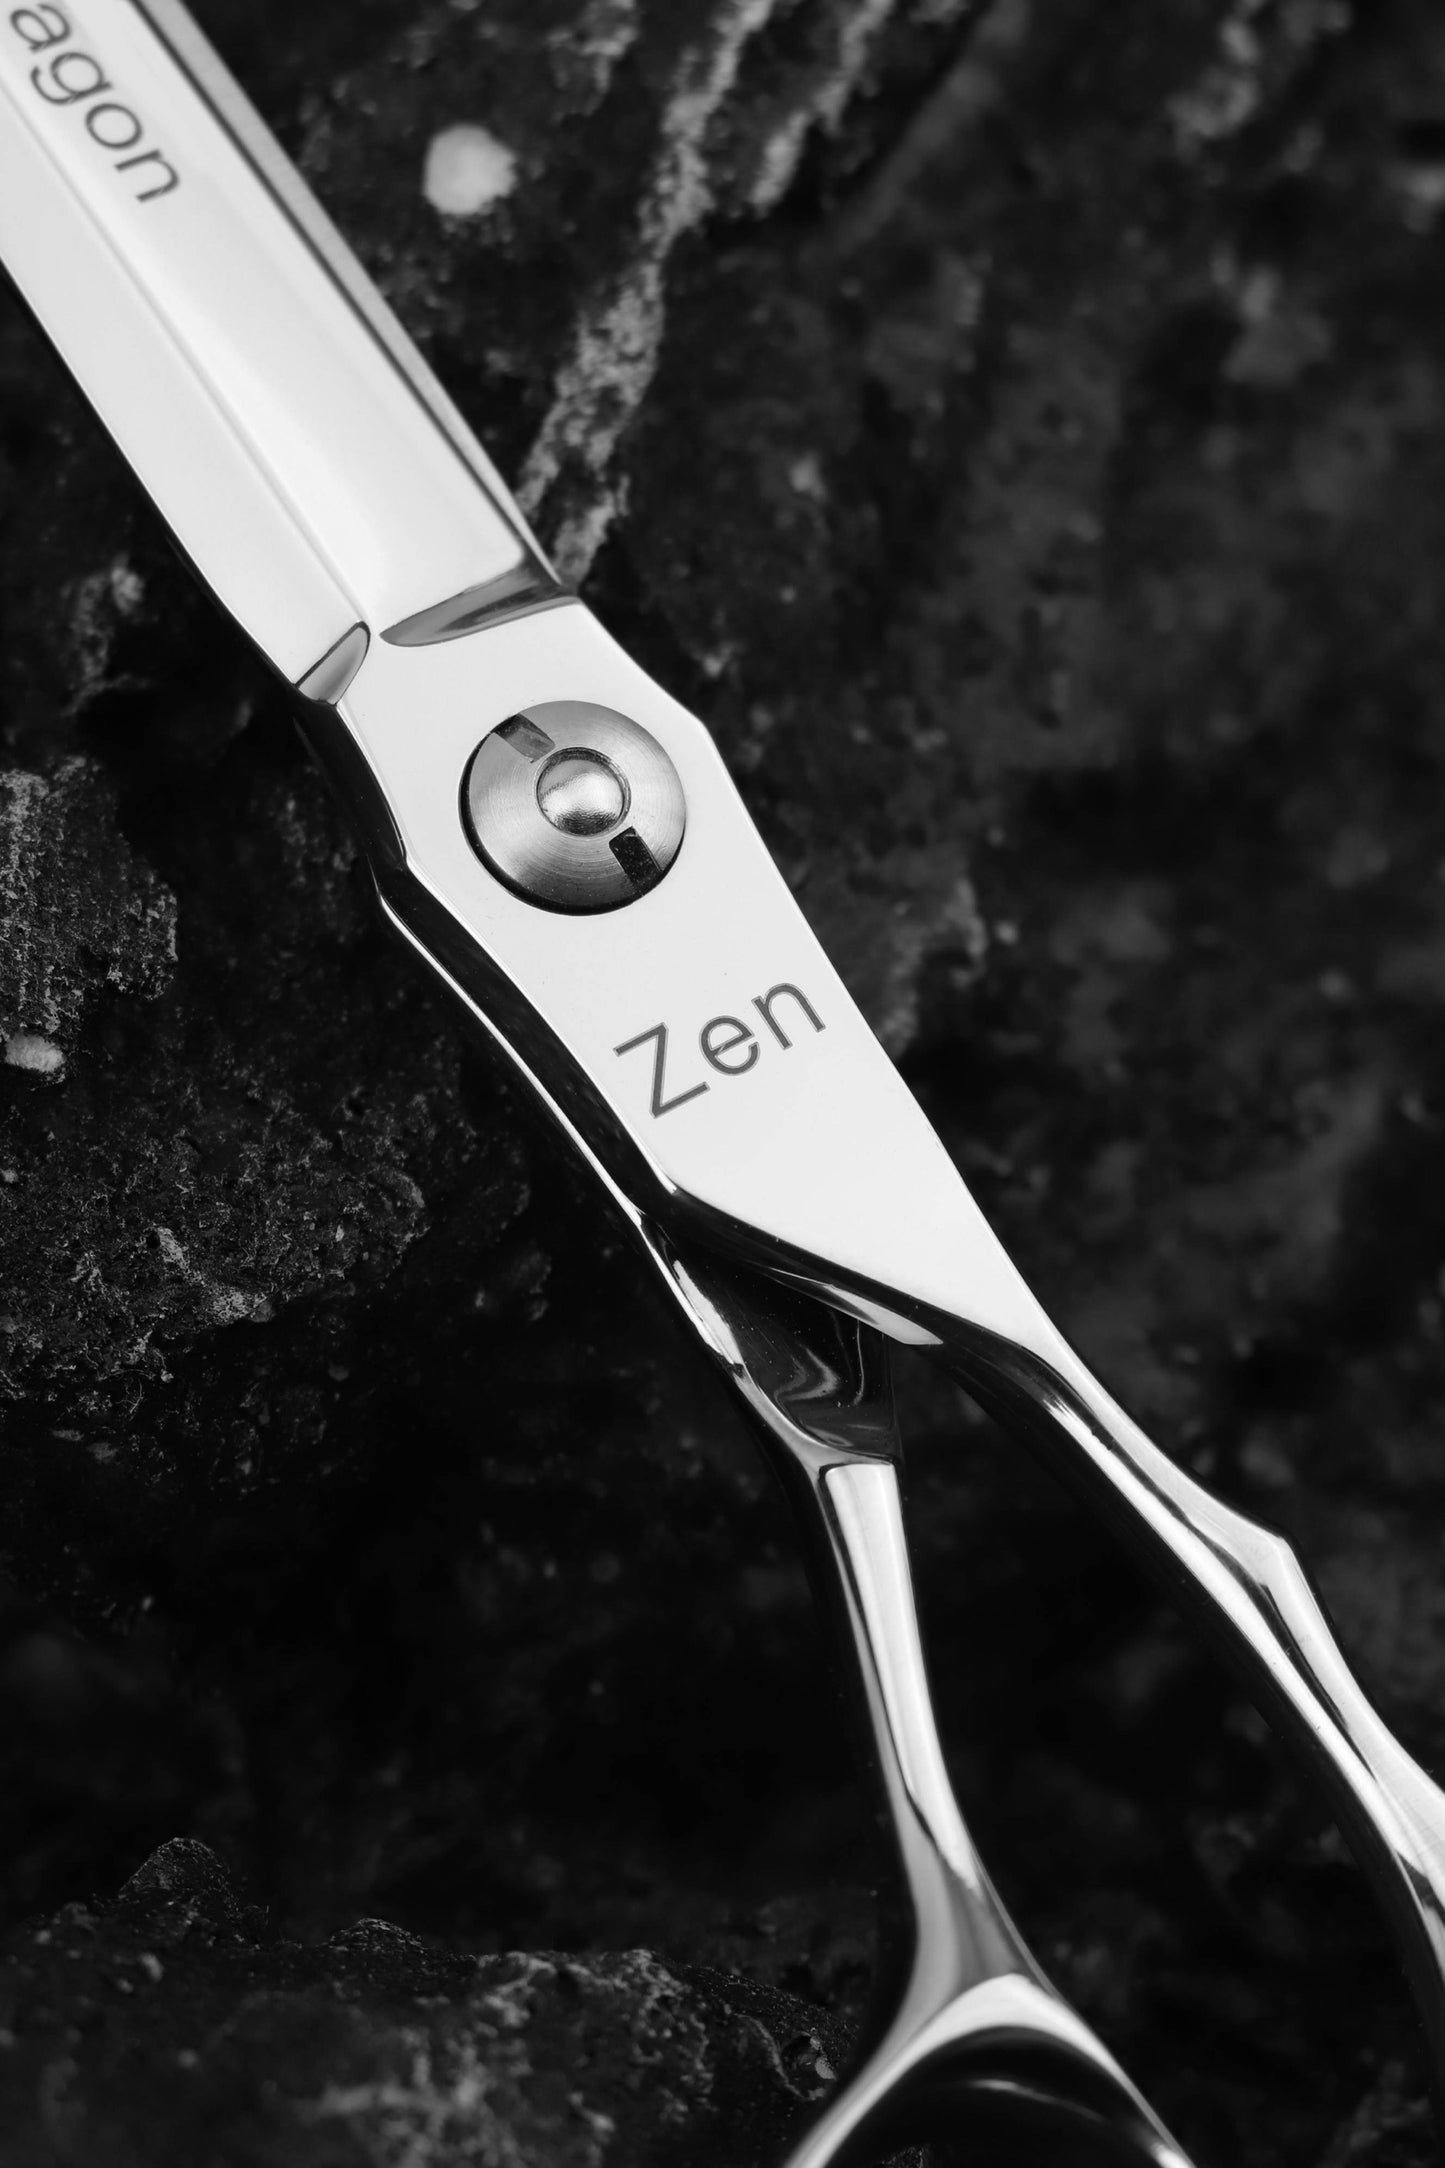 Zen Dragon 7" Samurai Scissor 440C Stainless Steel Convex Edge